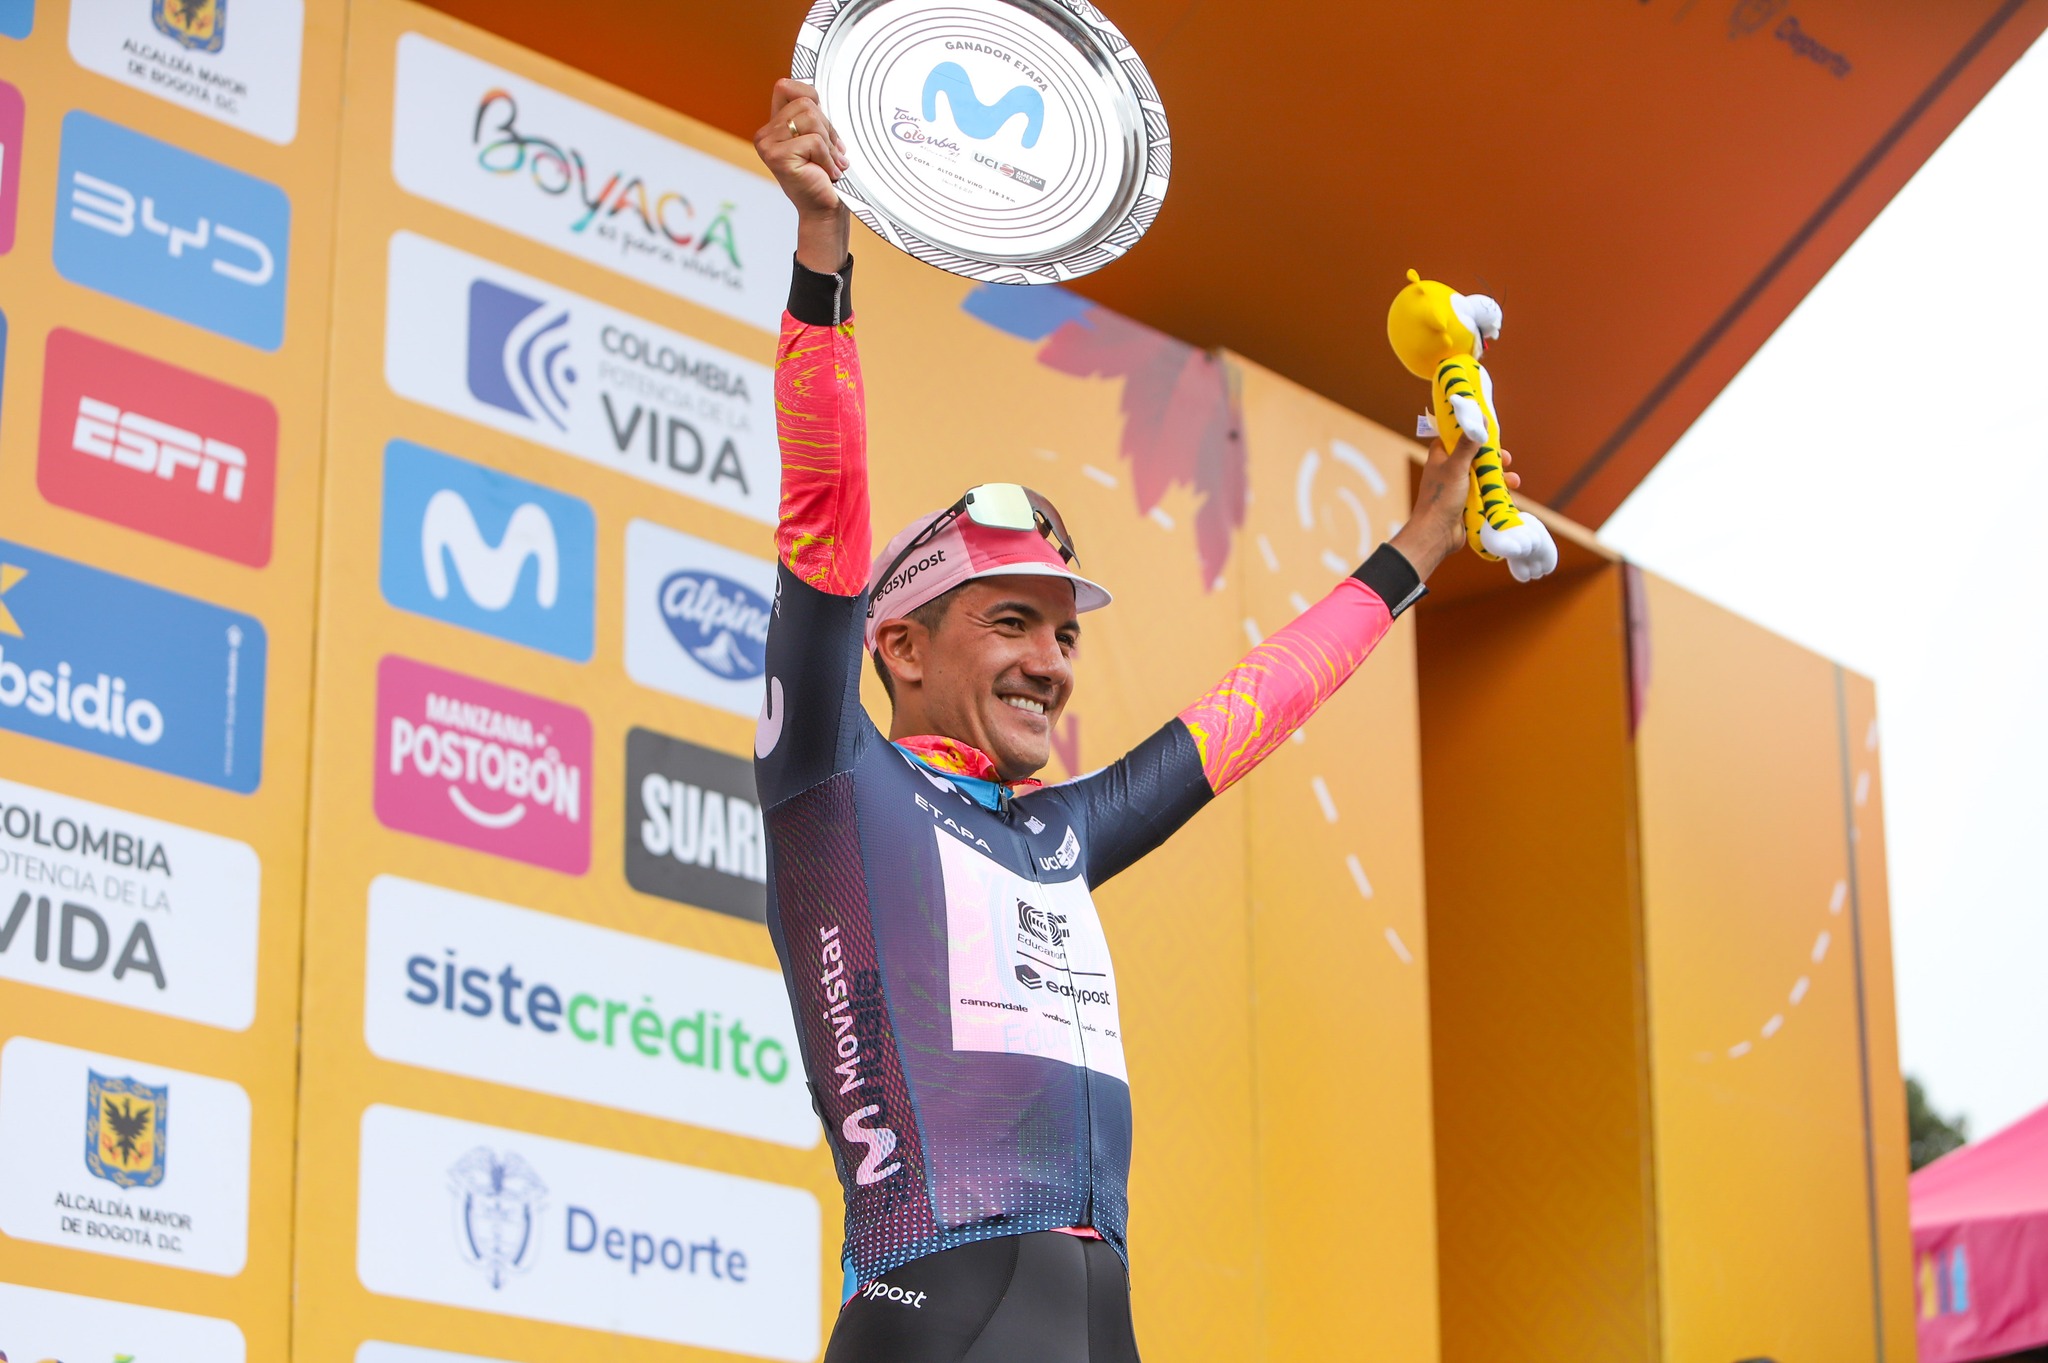 Classement de la 5ème étape du Tour Colombia, remportée par Richard Carapaz.